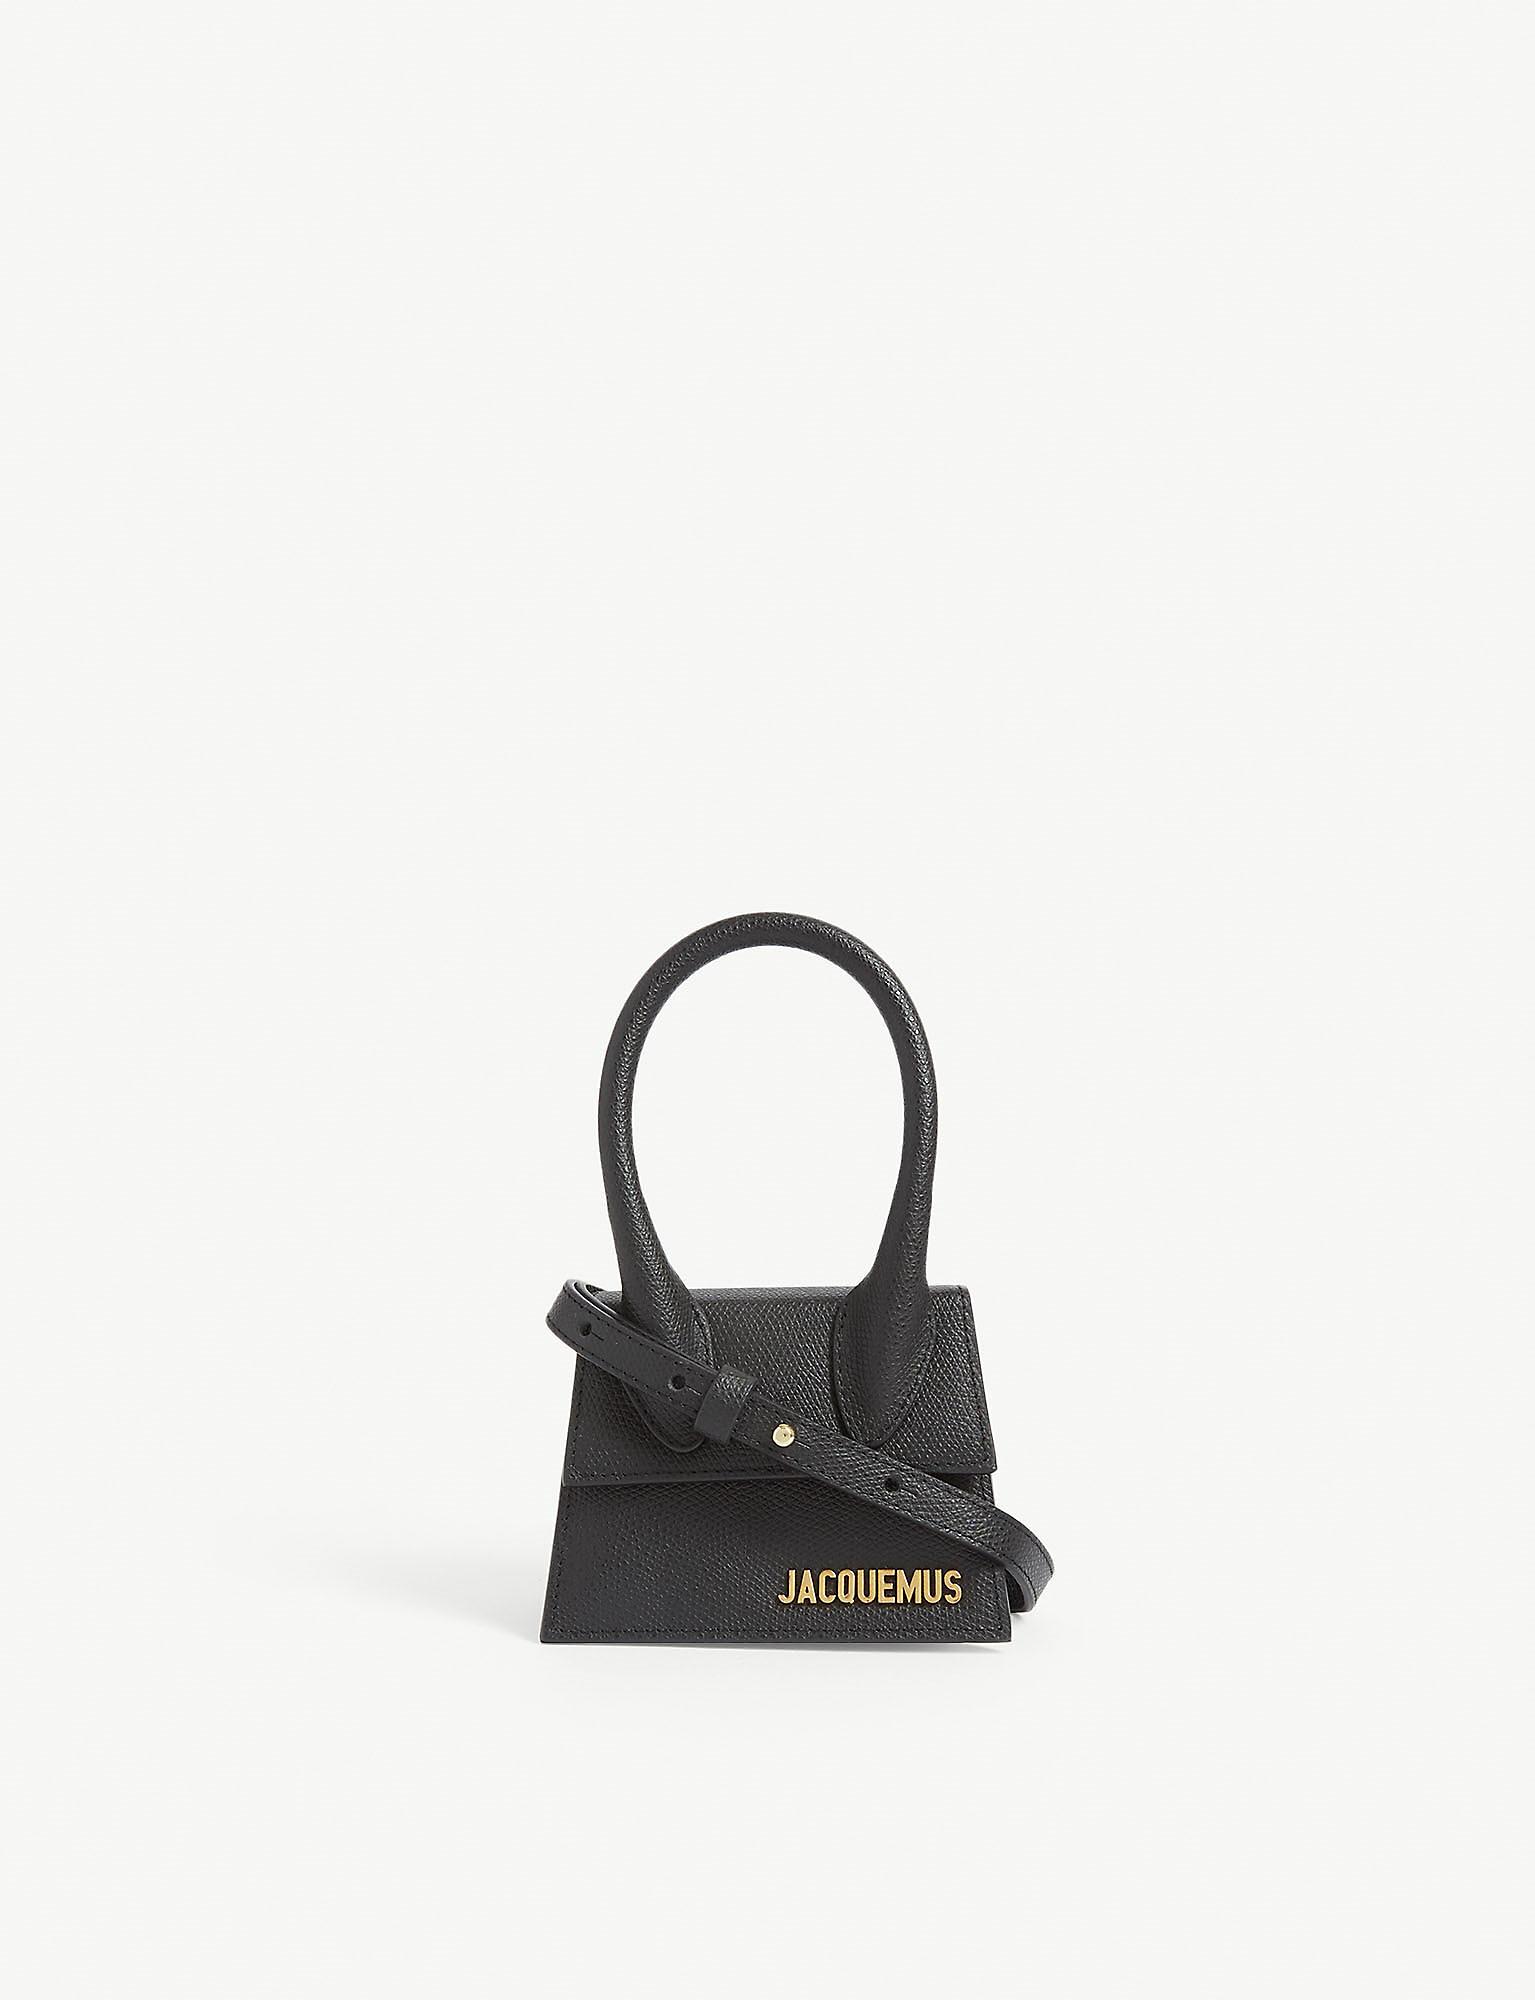 Jacquemus Mini Le Chiquito Leather Bag - Farfetch